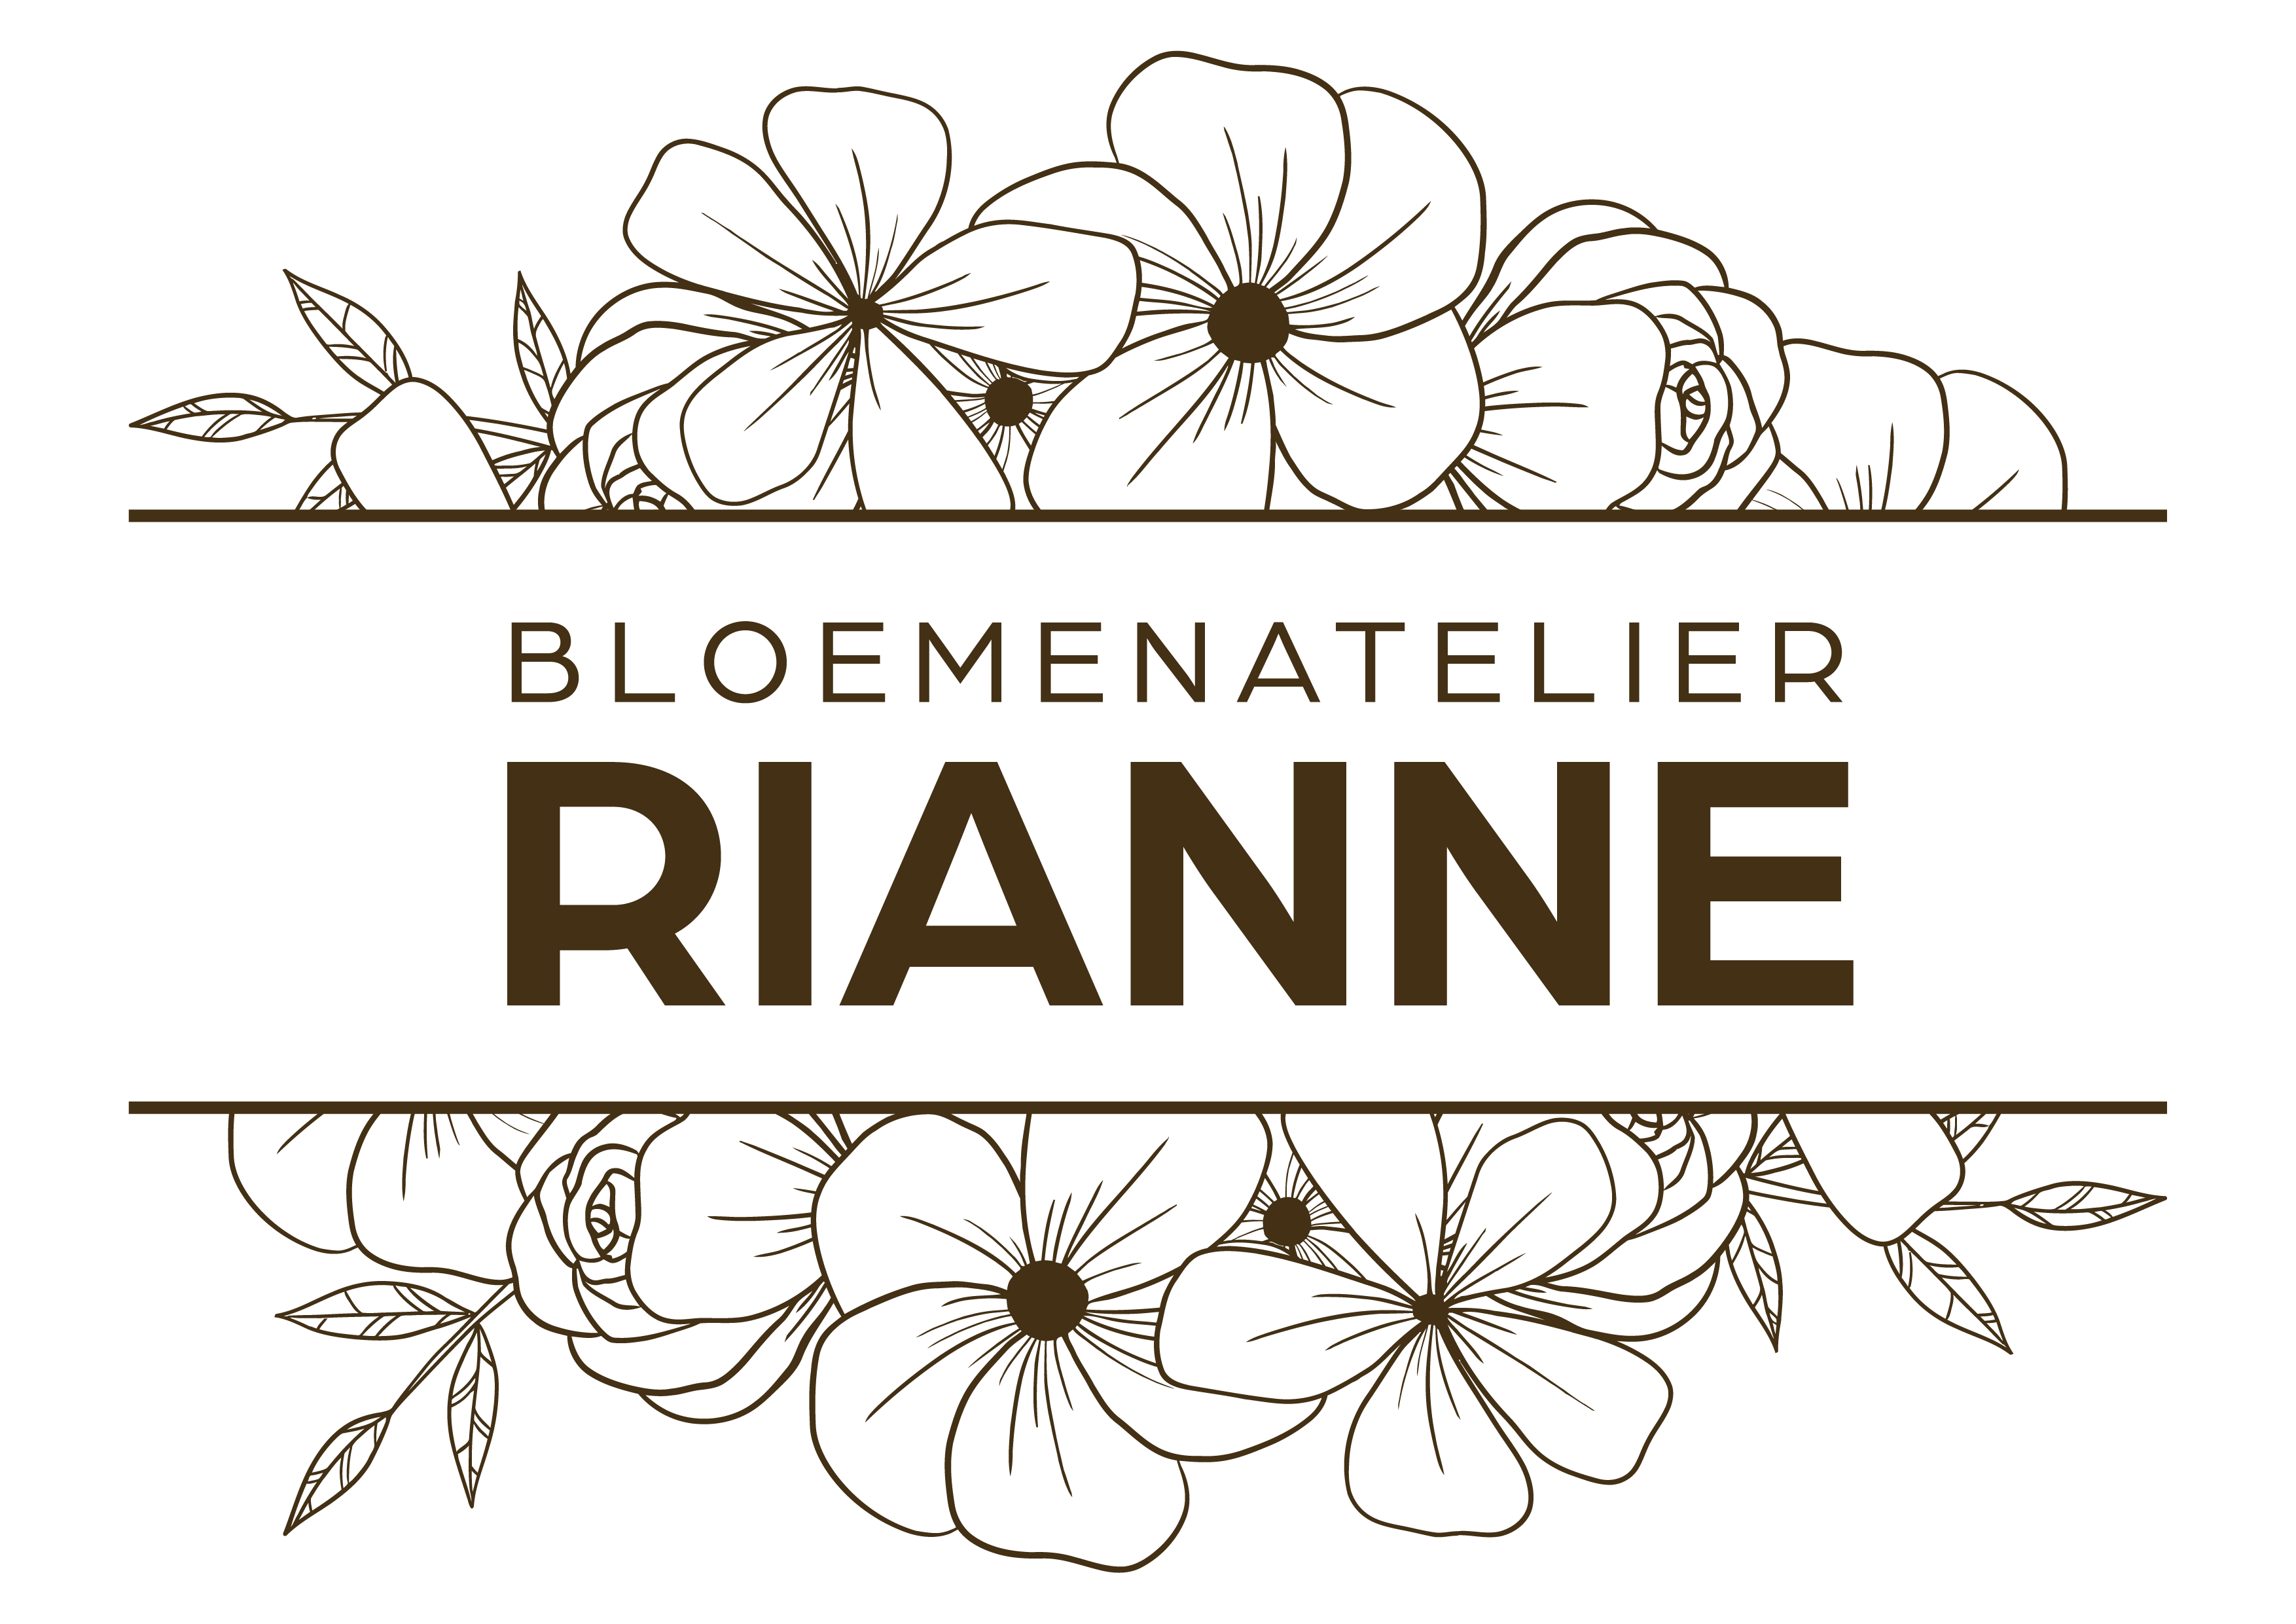 Bloemenatelier Rianne